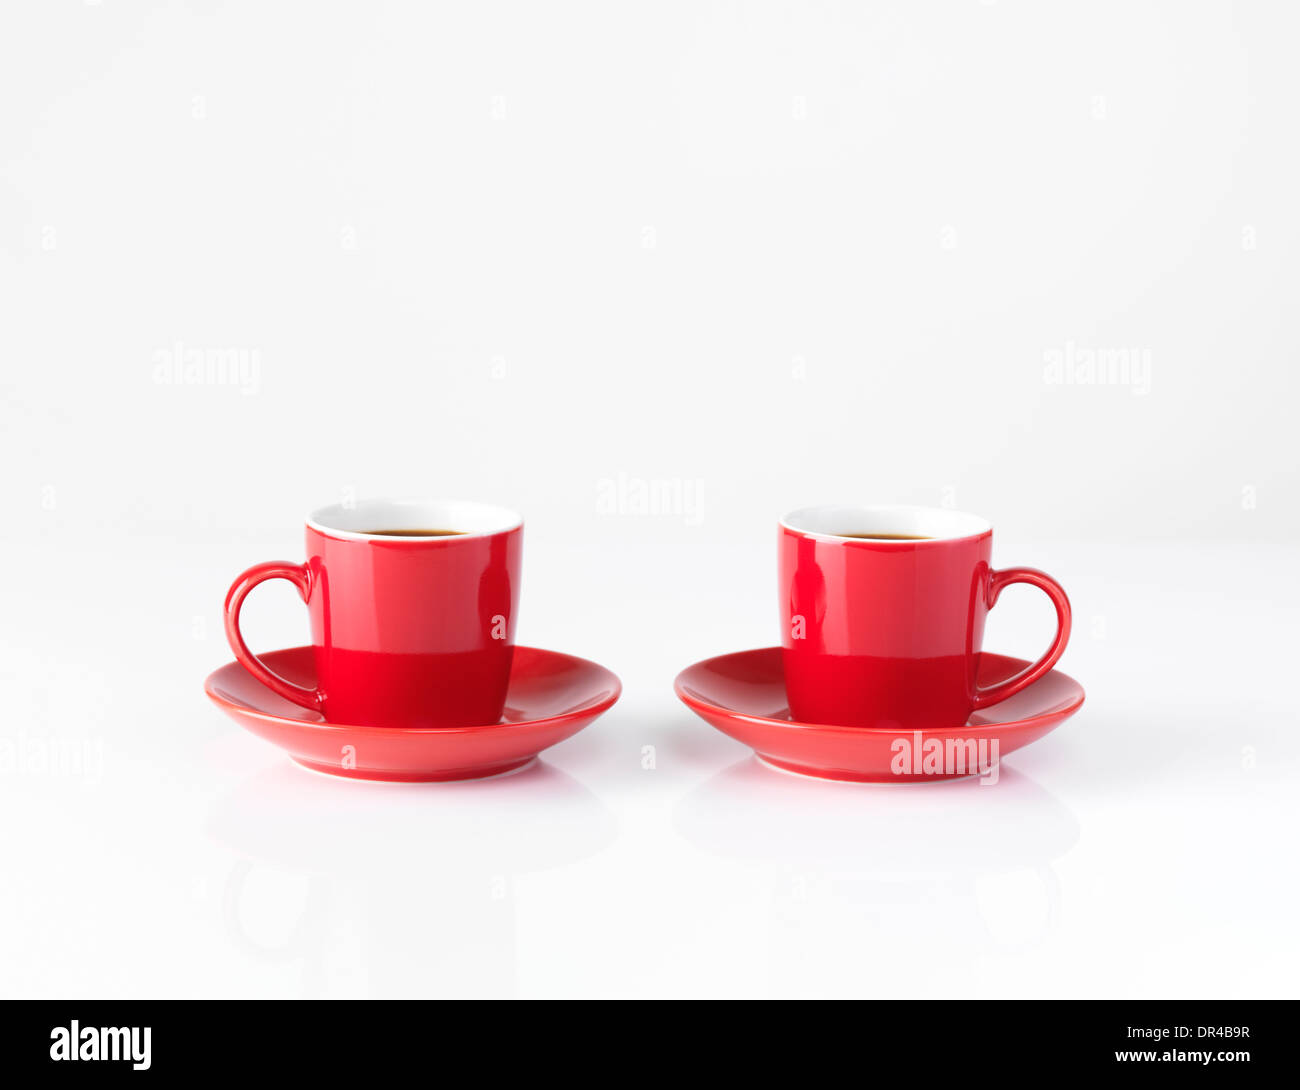 Due rosse piccole tazzine per il caffè isolato su sfondo bianco Foto Stock